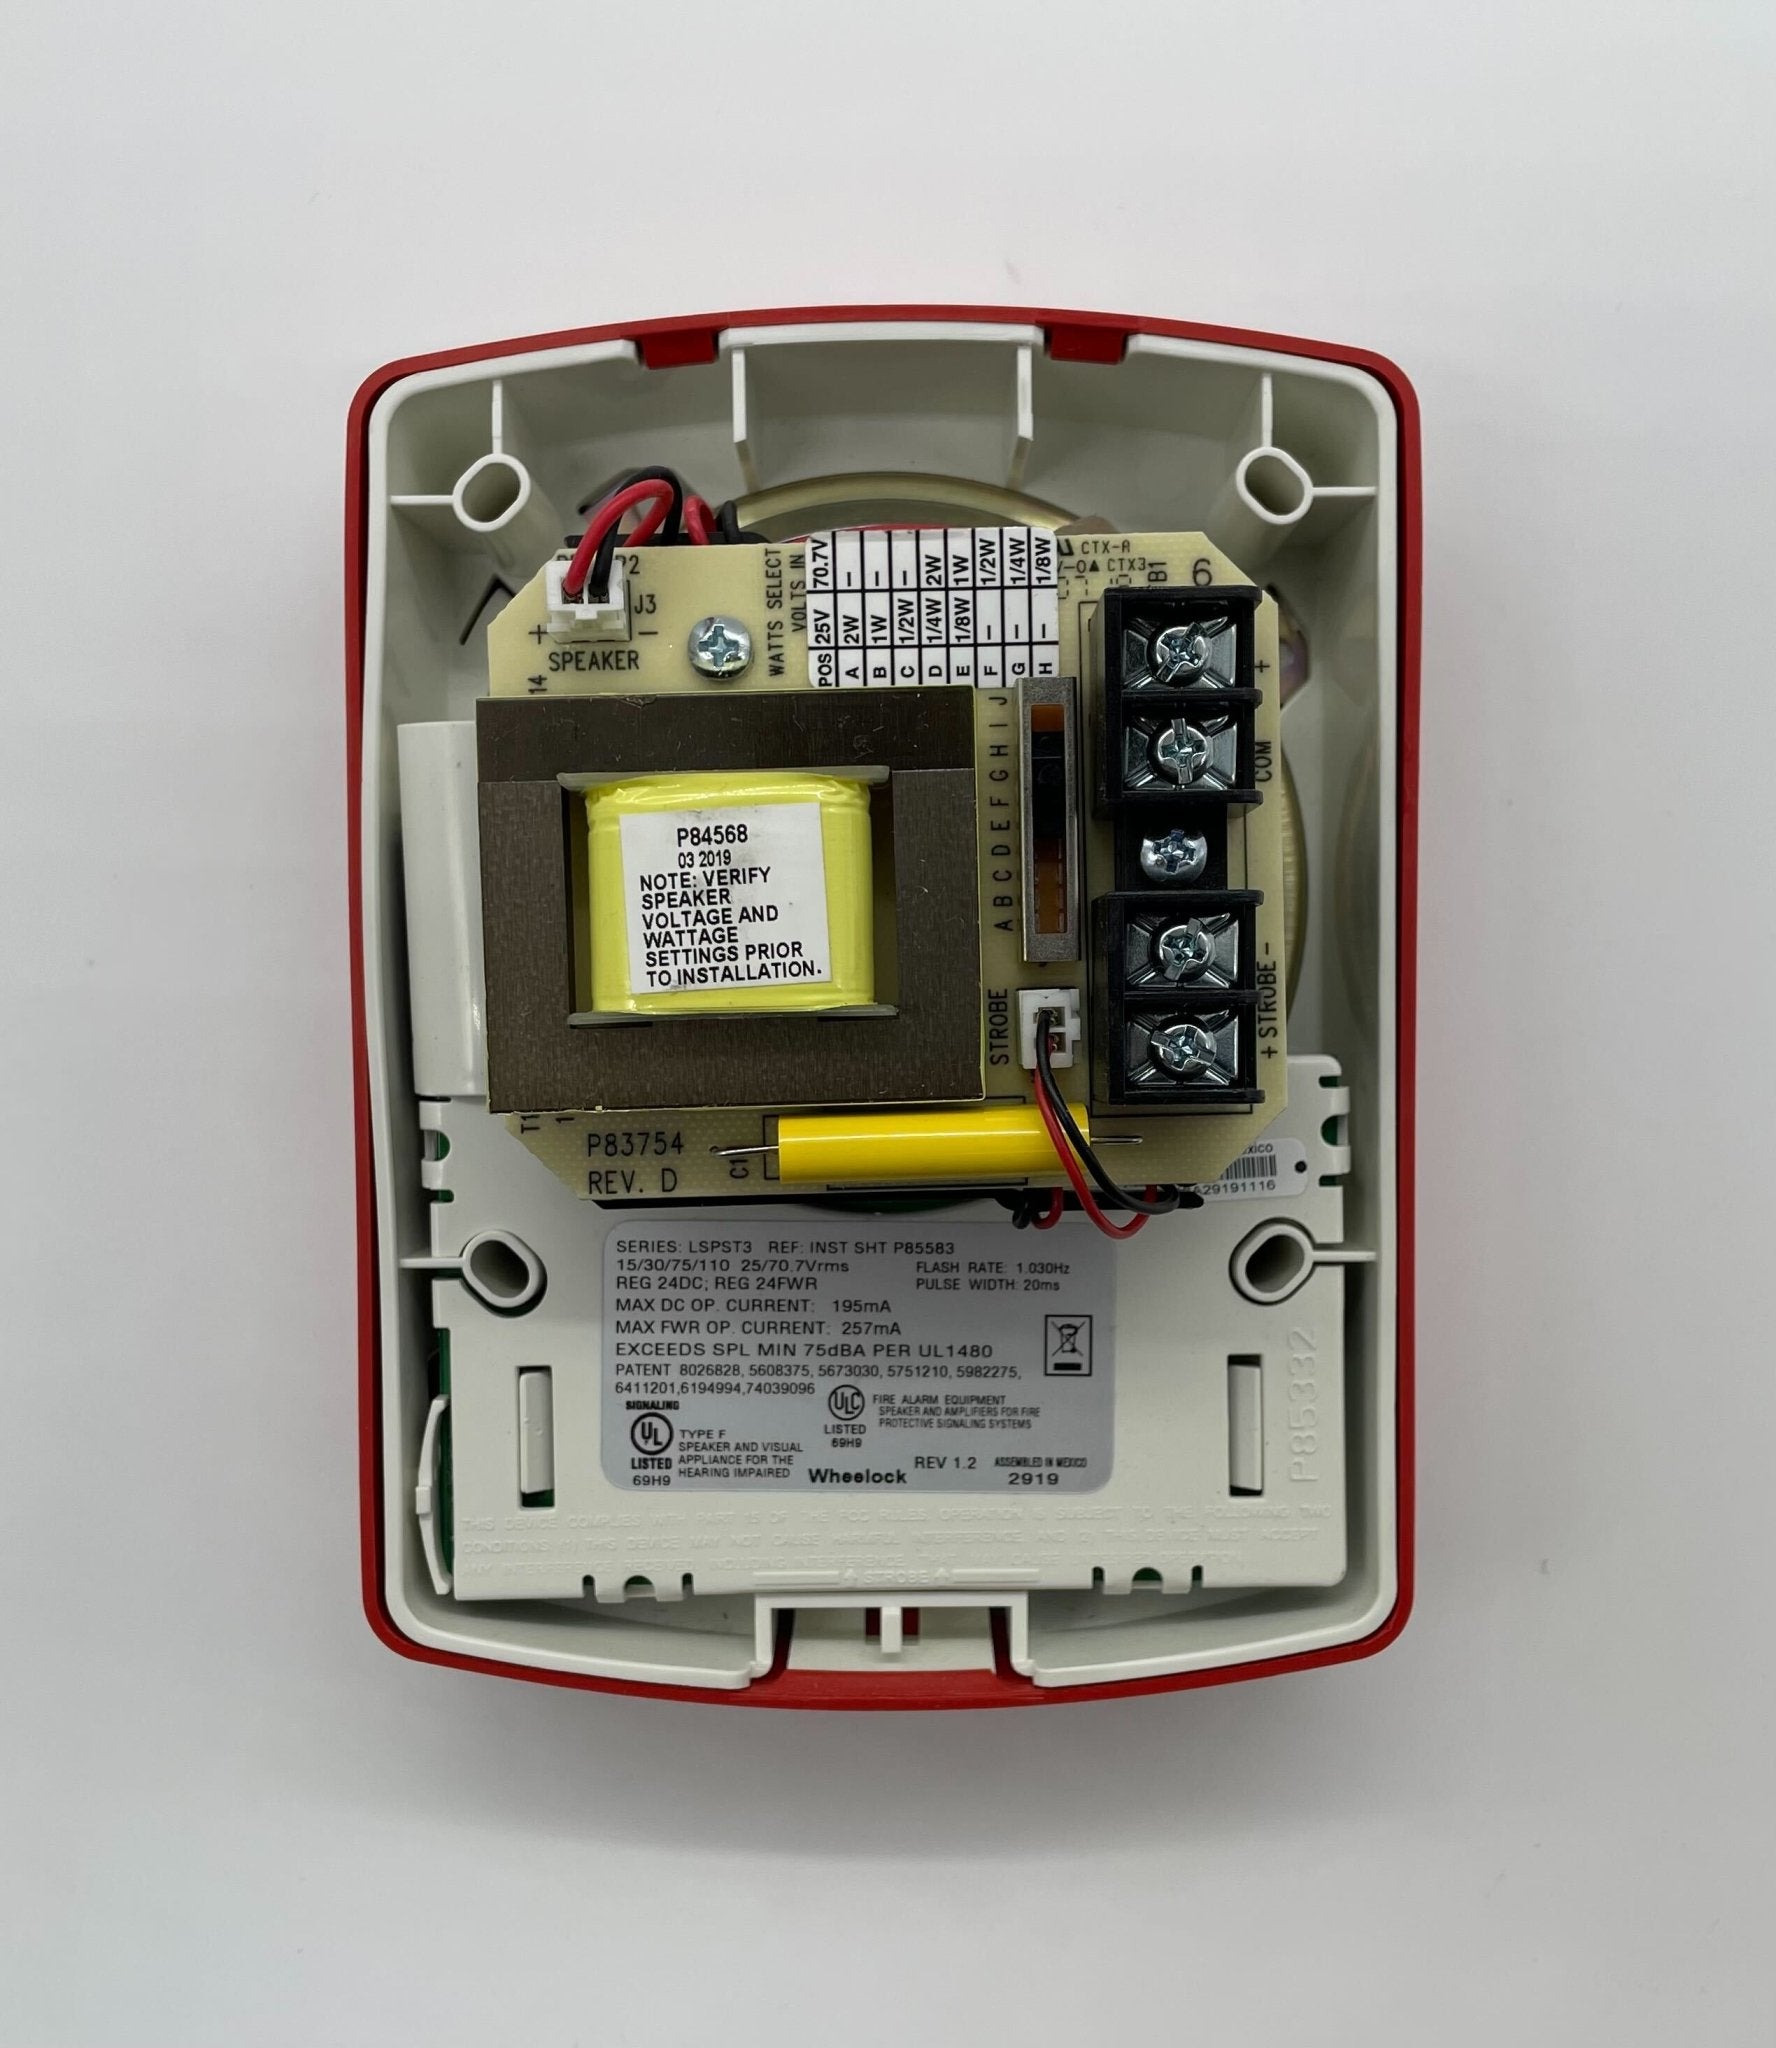 Wheelock LSPSTR3 - The Fire Alarm Supplier